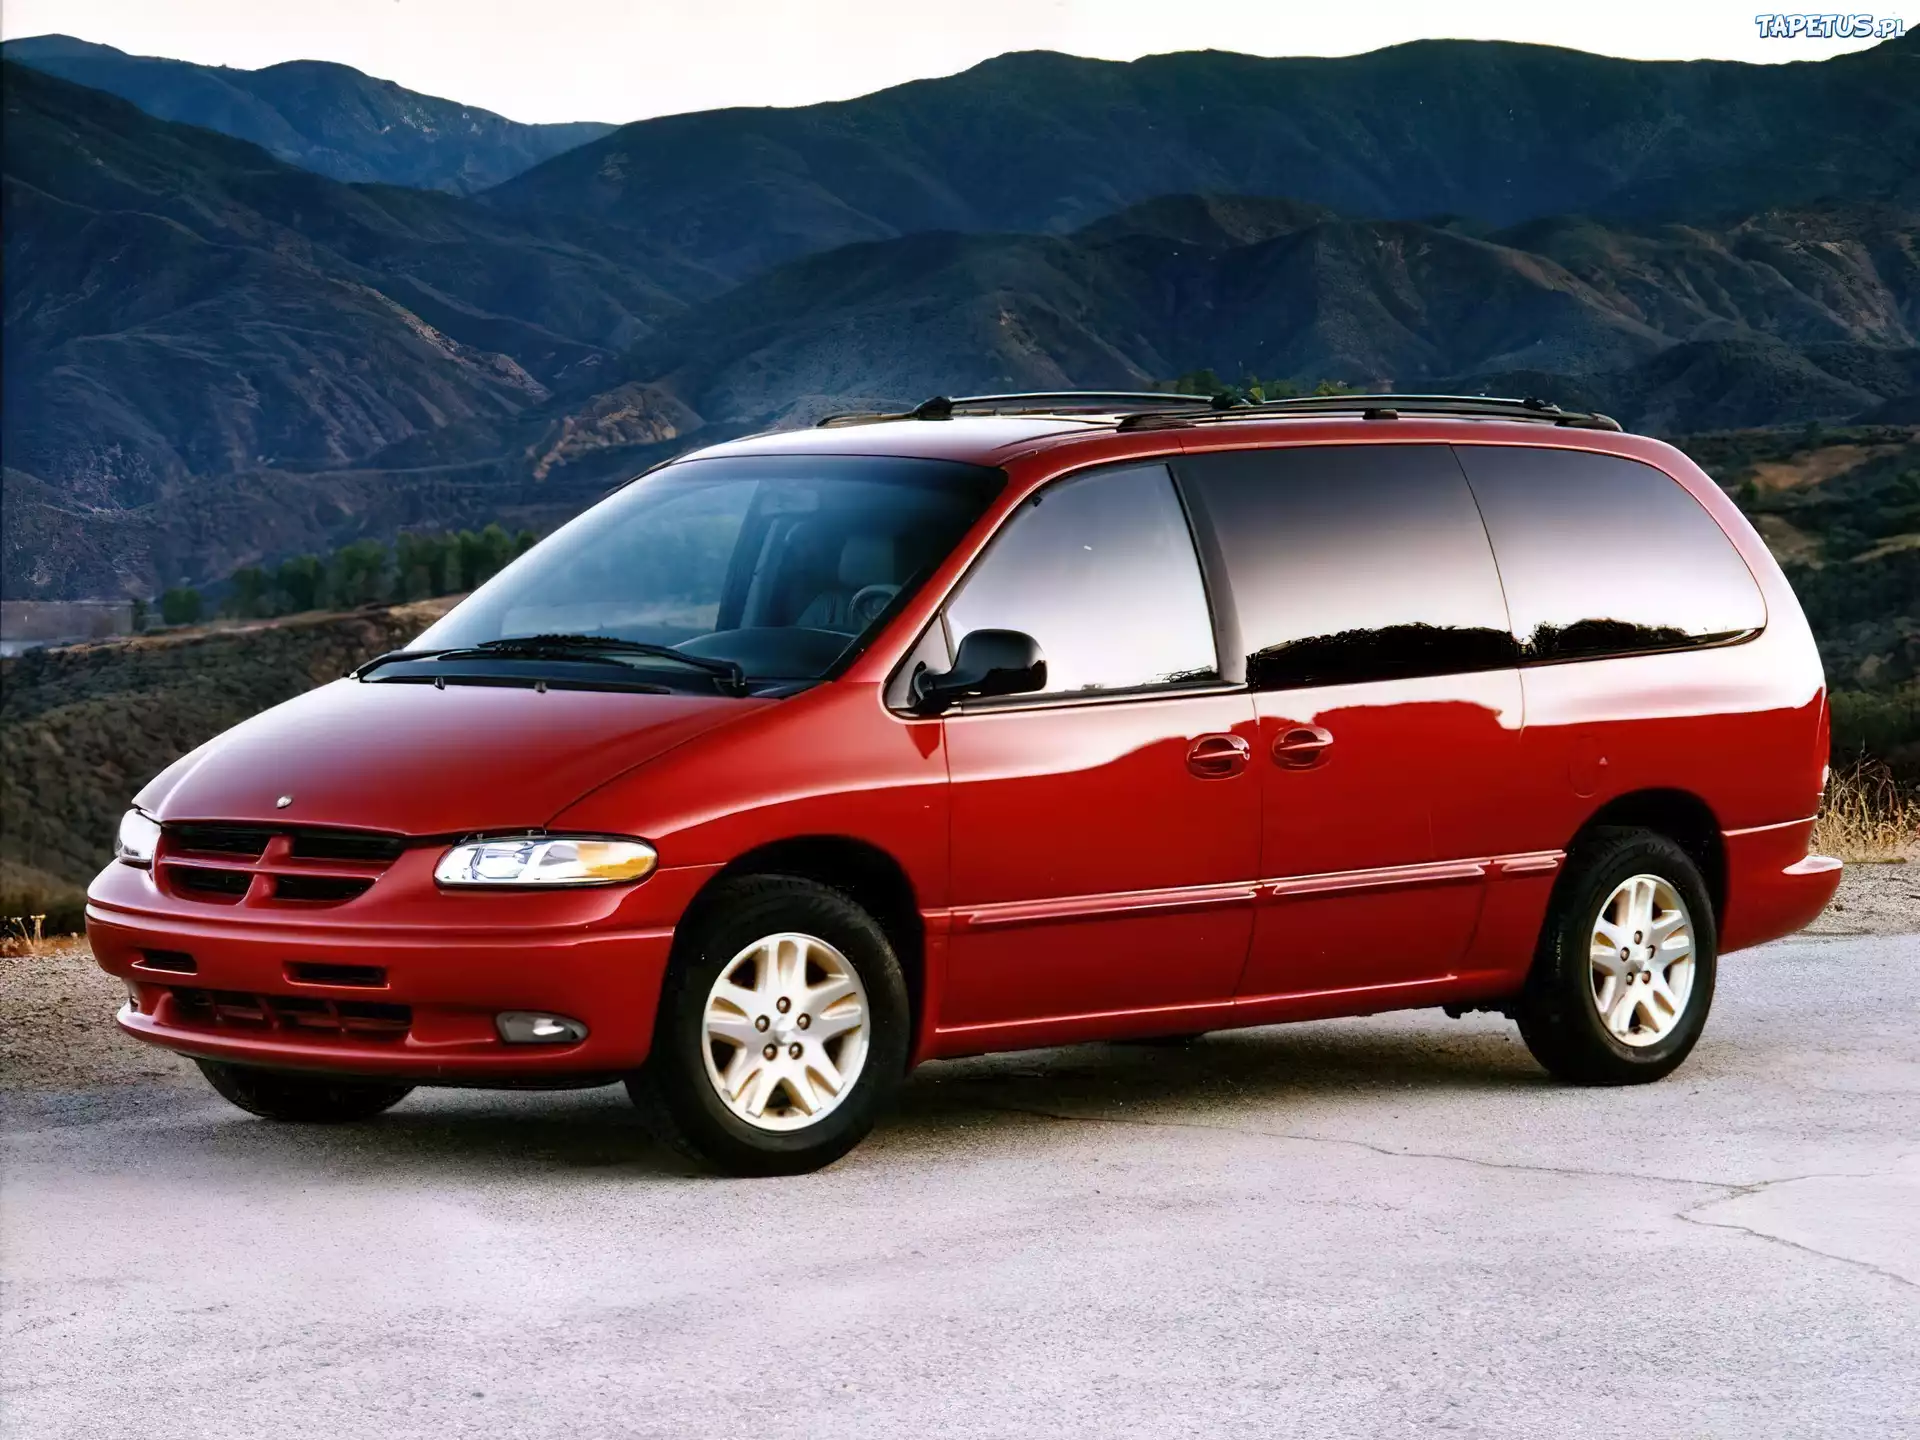 Додж караван 2000 года. Dodge Caravan 1996. Dodge Caravan III 1995 - 2000 минивэн. Dodge Grand Caravan 1996. Dodge Caravan 4.